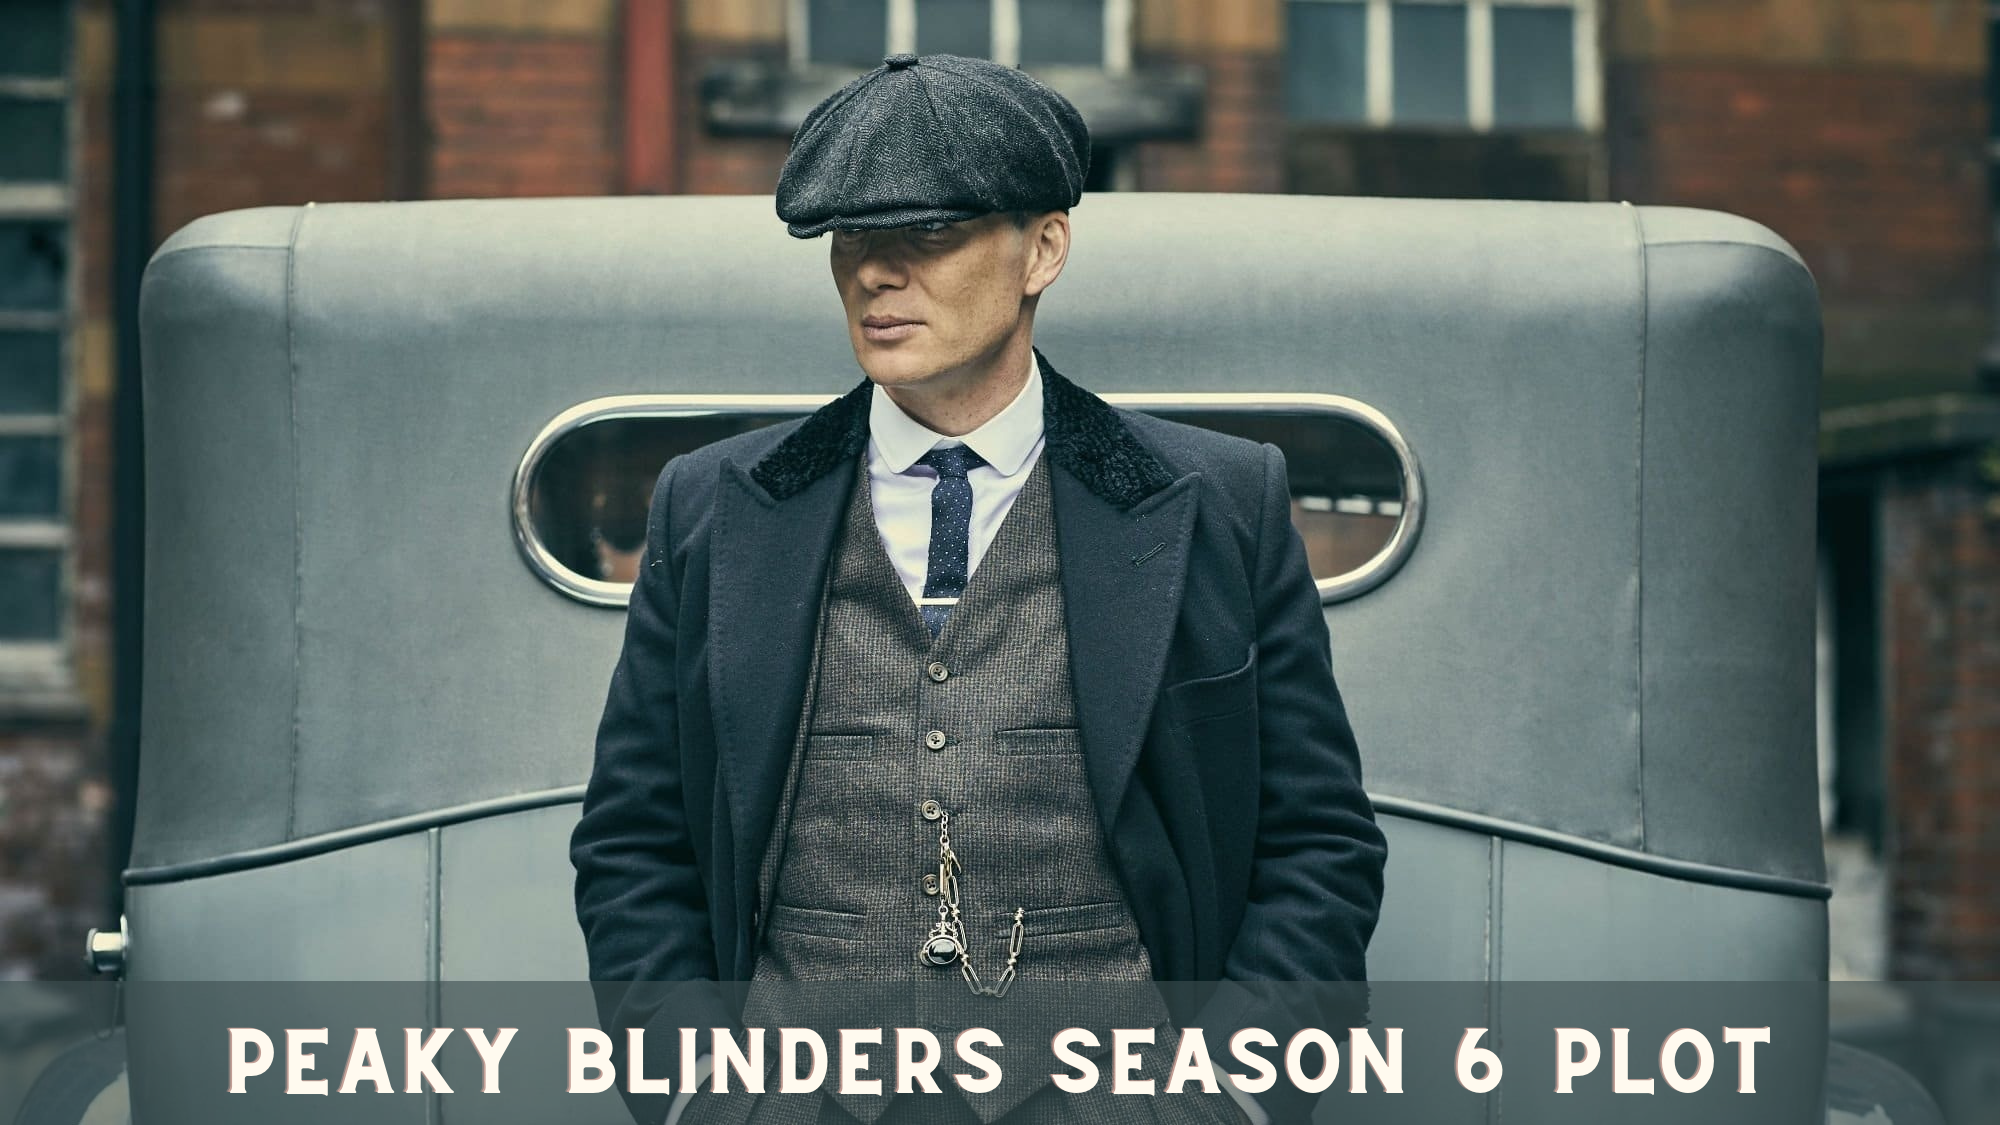 Peaky Blinders Season 6 Plot